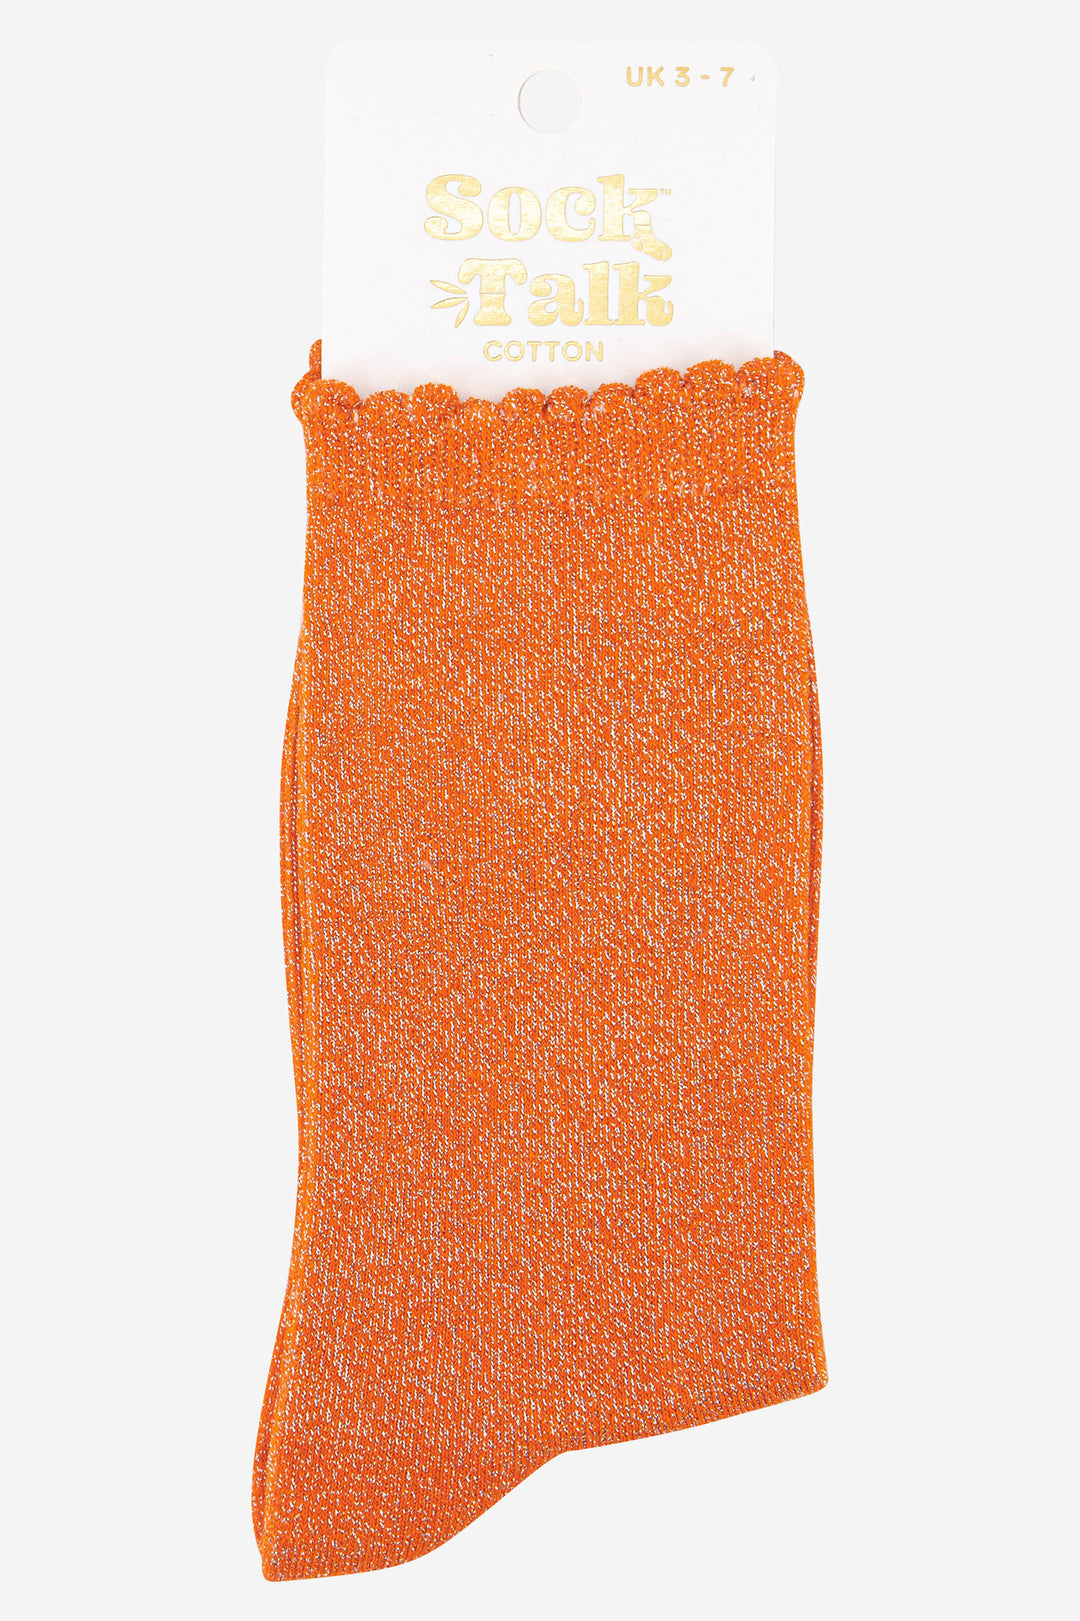 orange scalloped cuff cotton glitter socks uk size 3-7